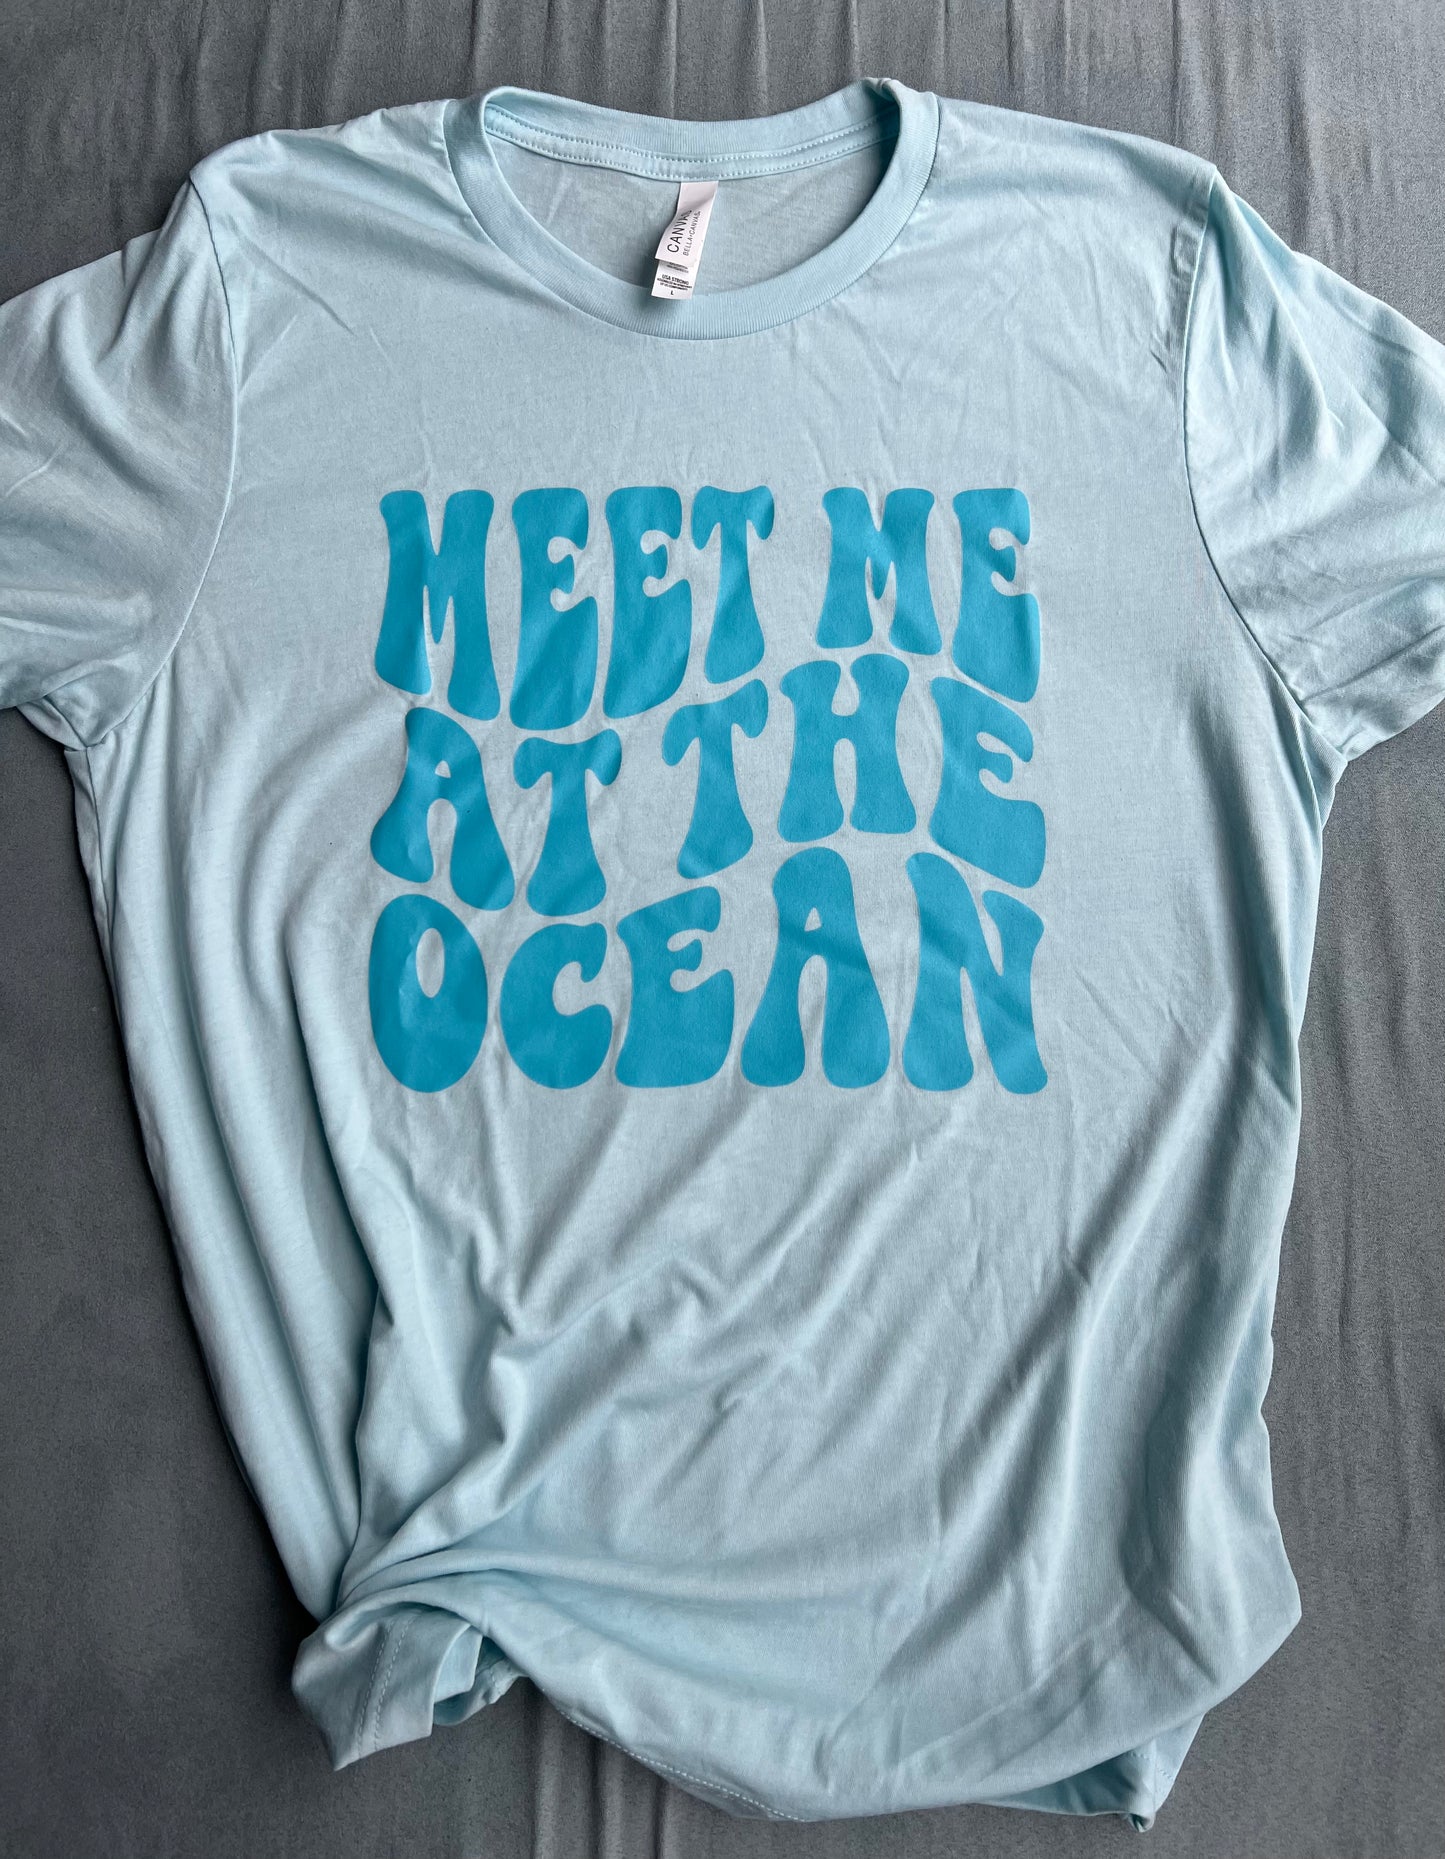 Meet Me at the Ocean Adult Tee